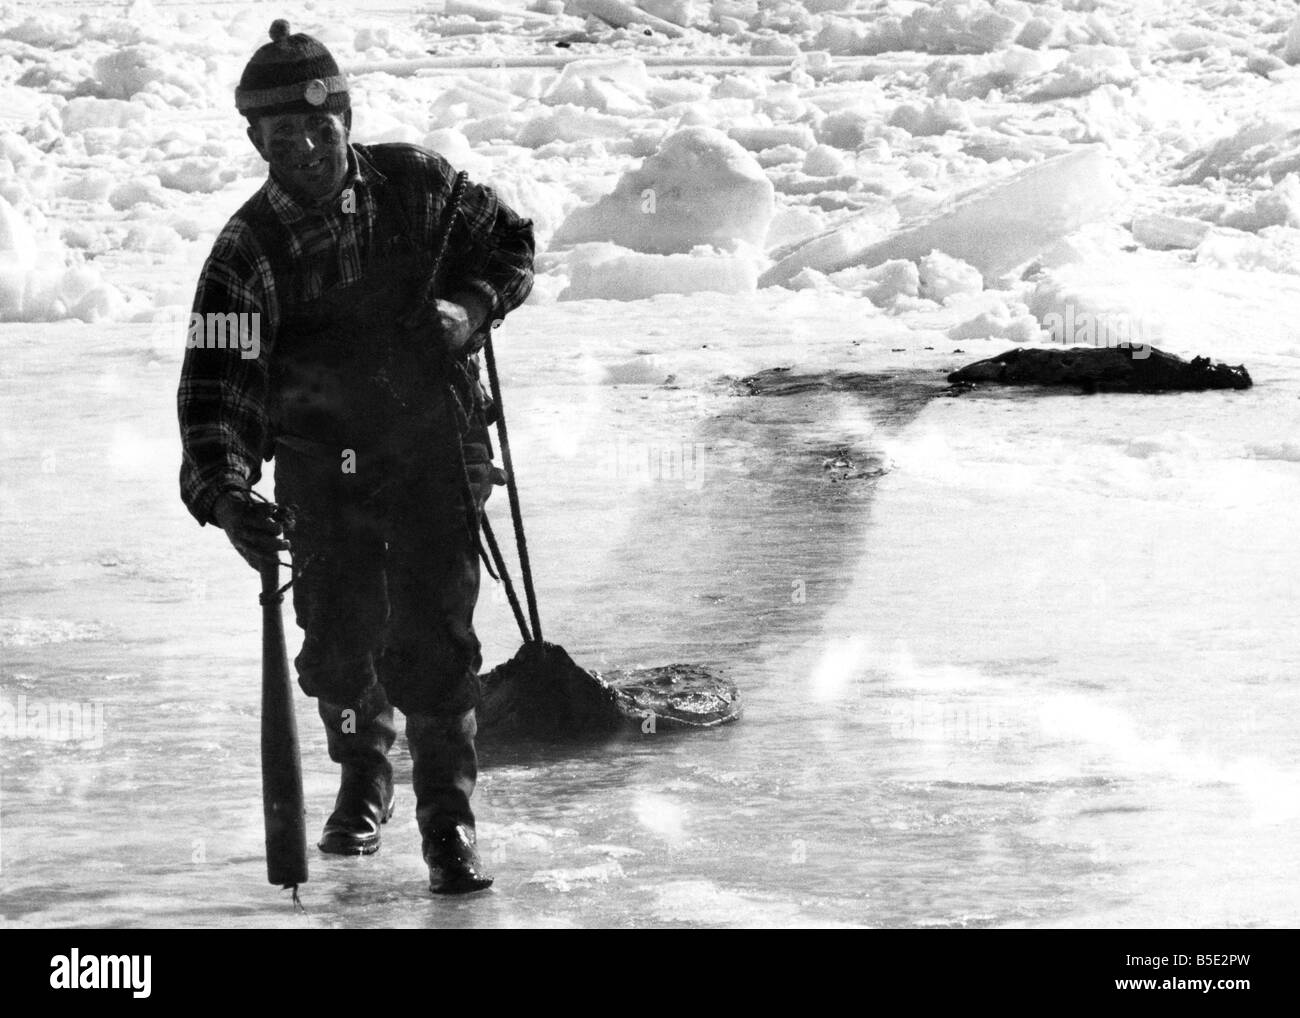 Un chasseur de phoque aux îles de la Madeleine, golfe du Saint-Laurent, le Canada traîne une peau de phoque ensanglantés sur la glace. Un homme a admis : "C'est la façon la plus dure au monde à faire un dollar." Mars 1968 P000766 Banque D'Images